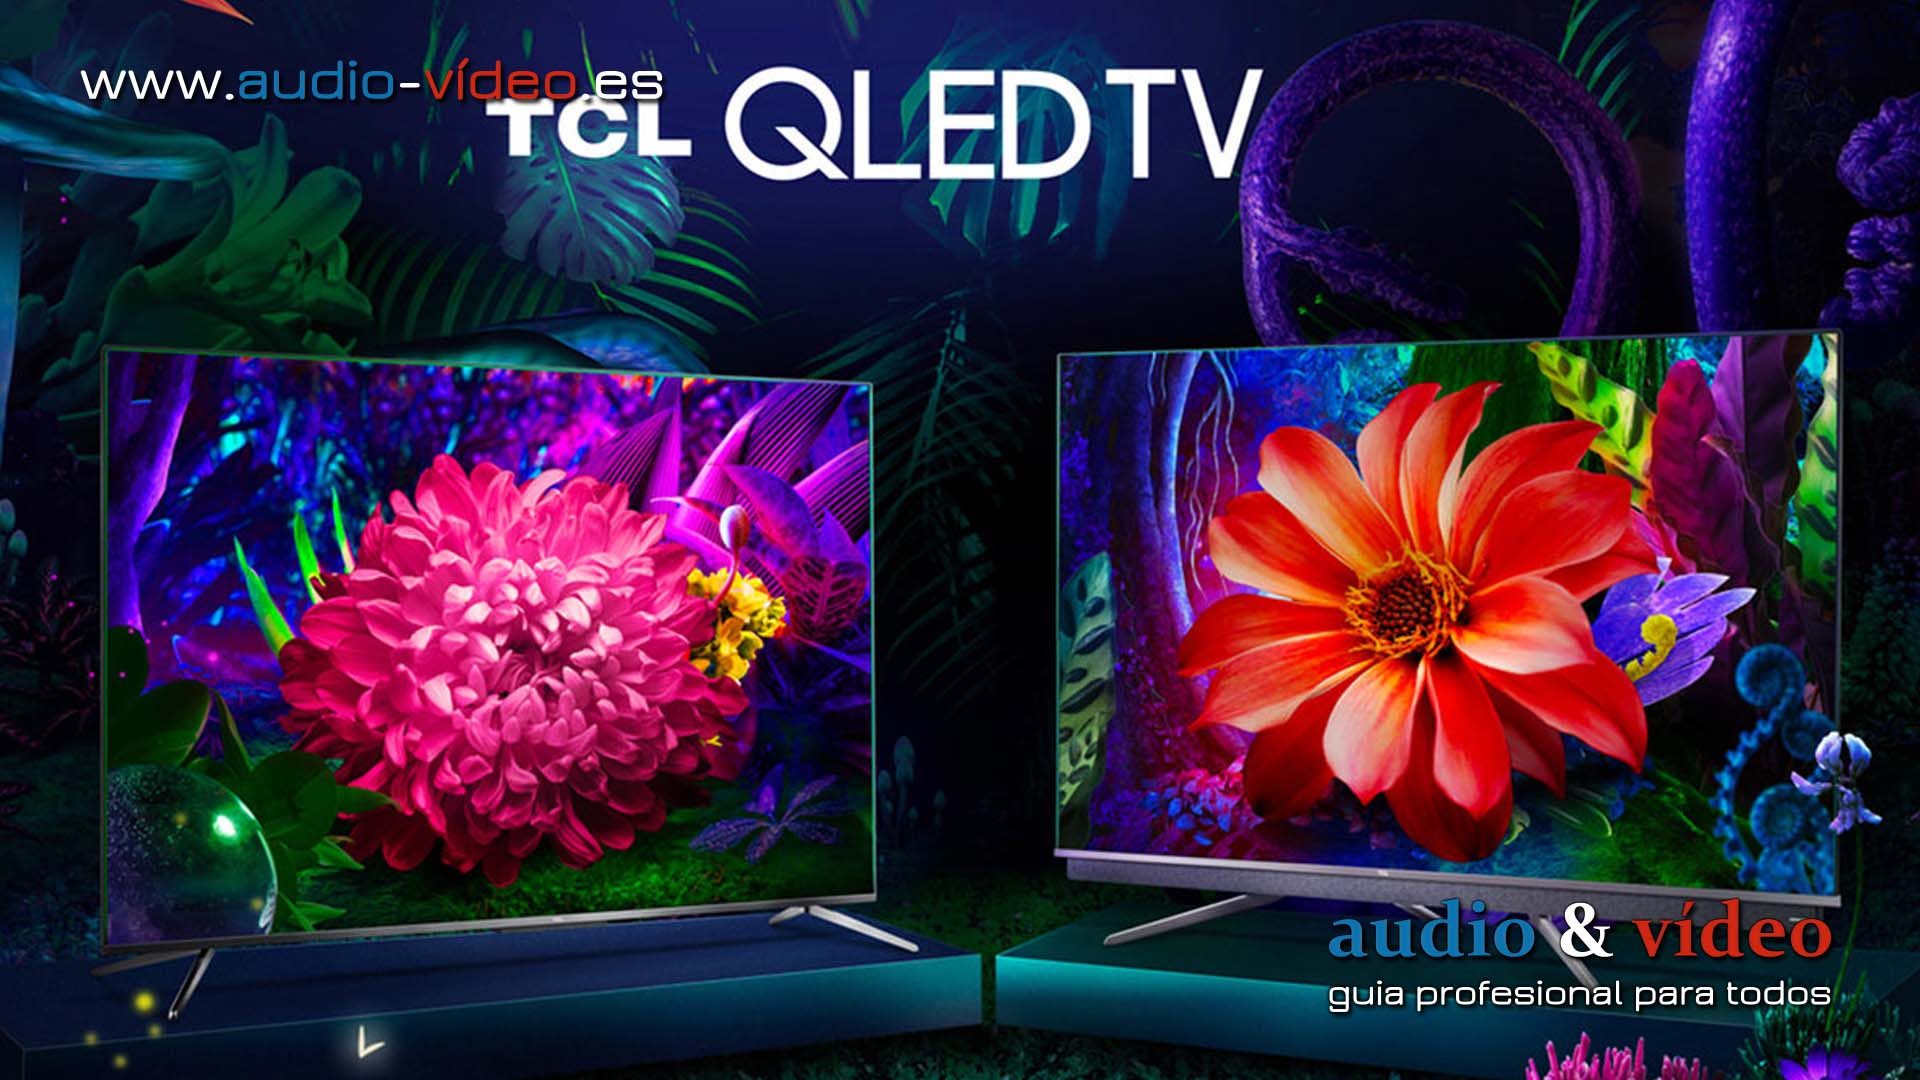 TCL lanza su primer televisor TCL X915 8K TV QLED con HDMI 2.1